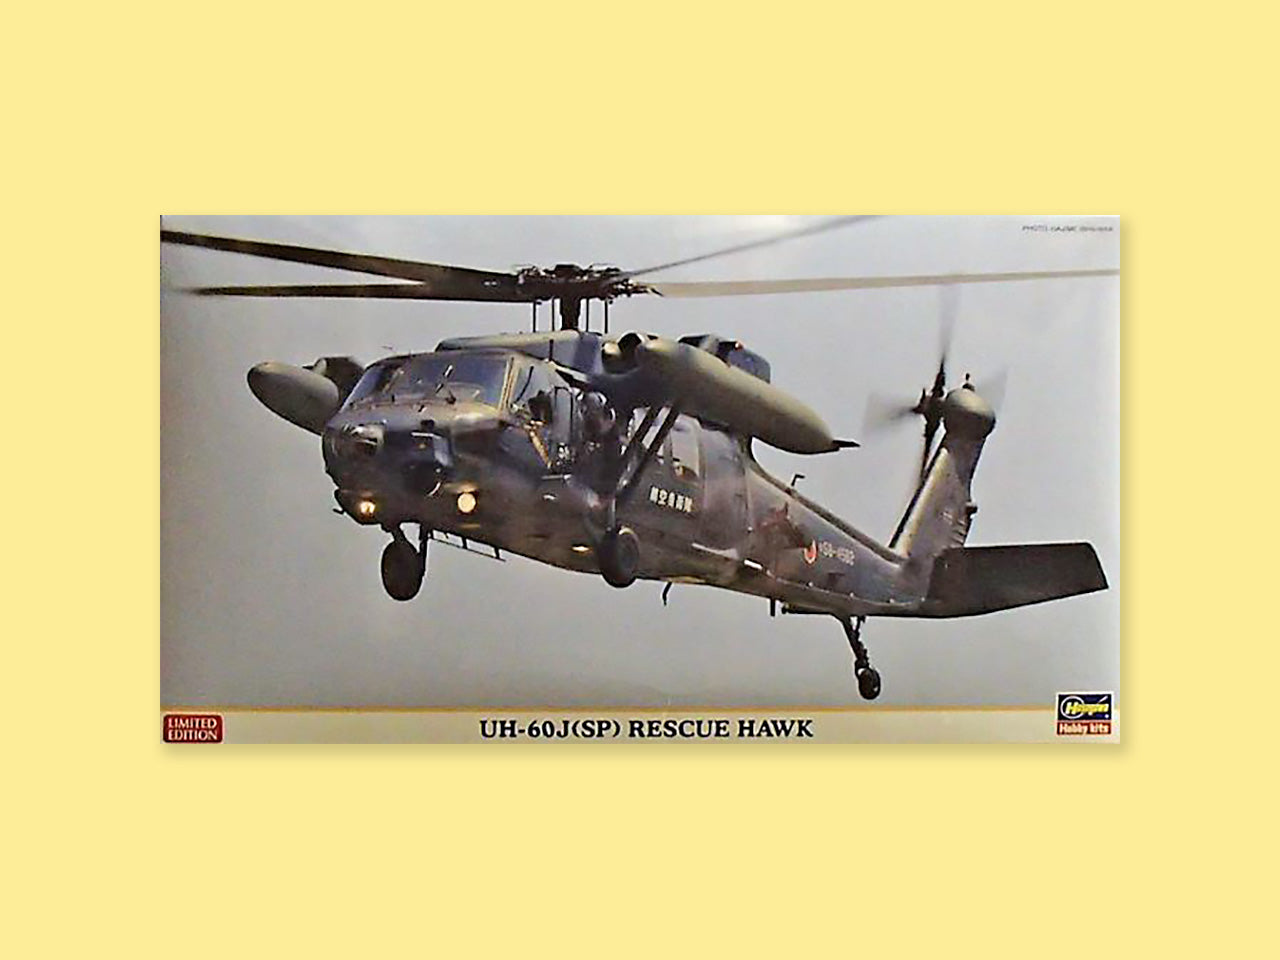 Sikorsky UH-60 J (SP) "Black Hawk"